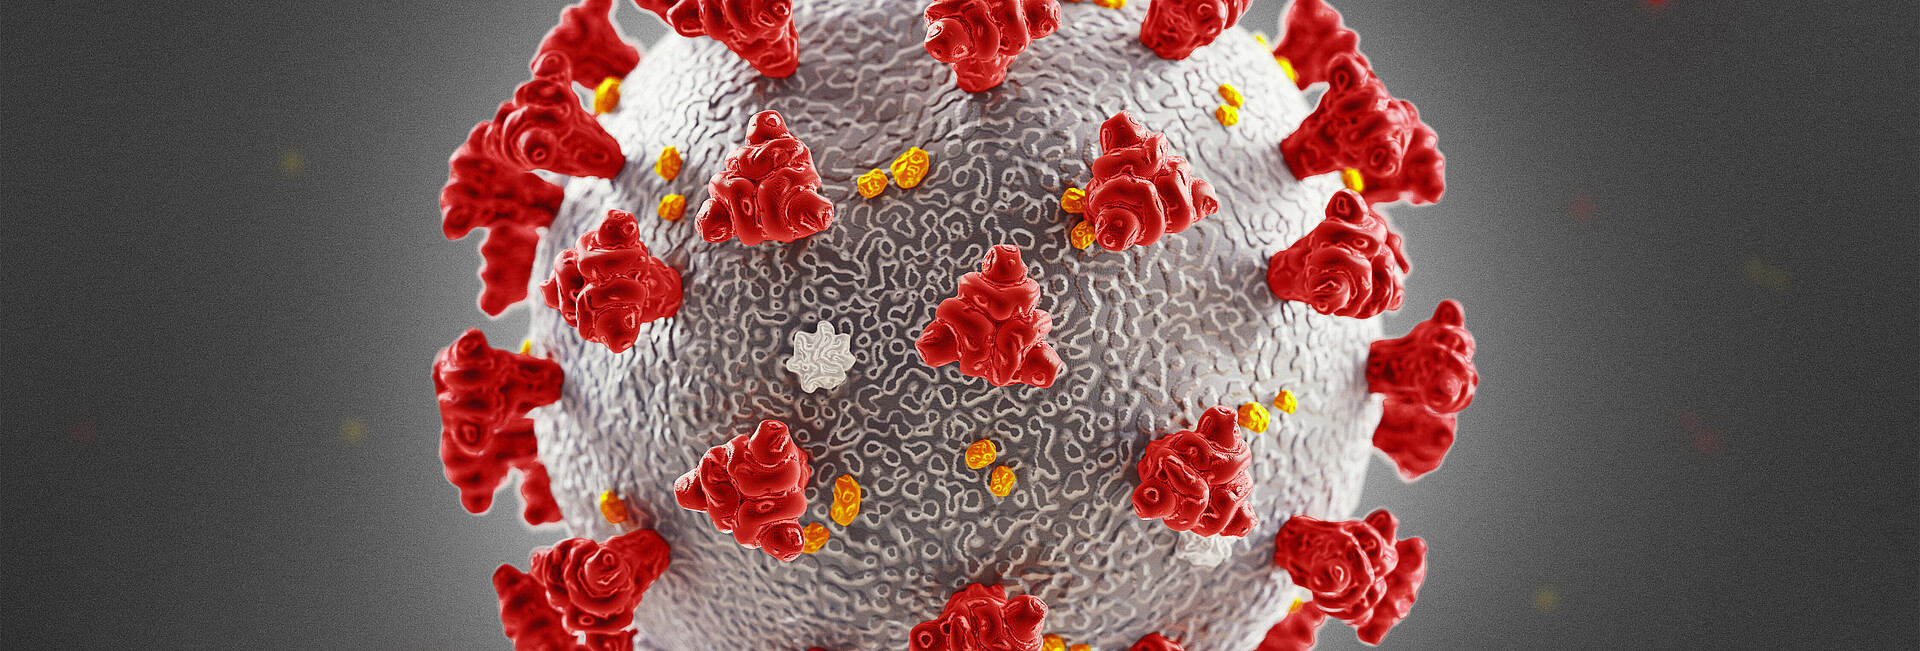 Der Coronavirus im inneren eines Körpers